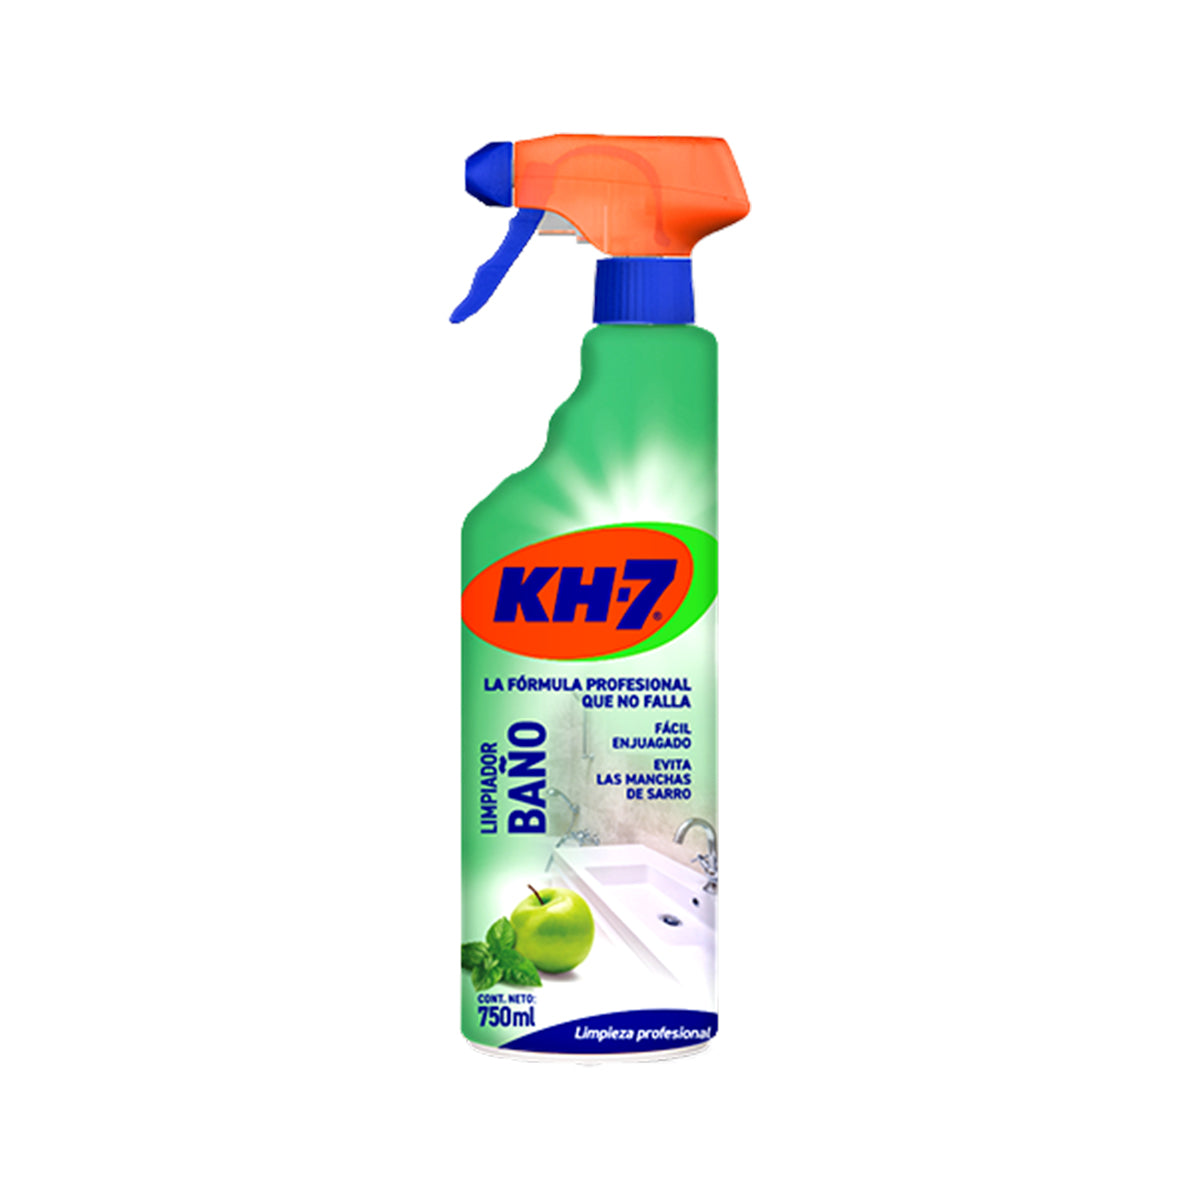 Comprar desengrasante - Kh7 - Al mejor precio On Line